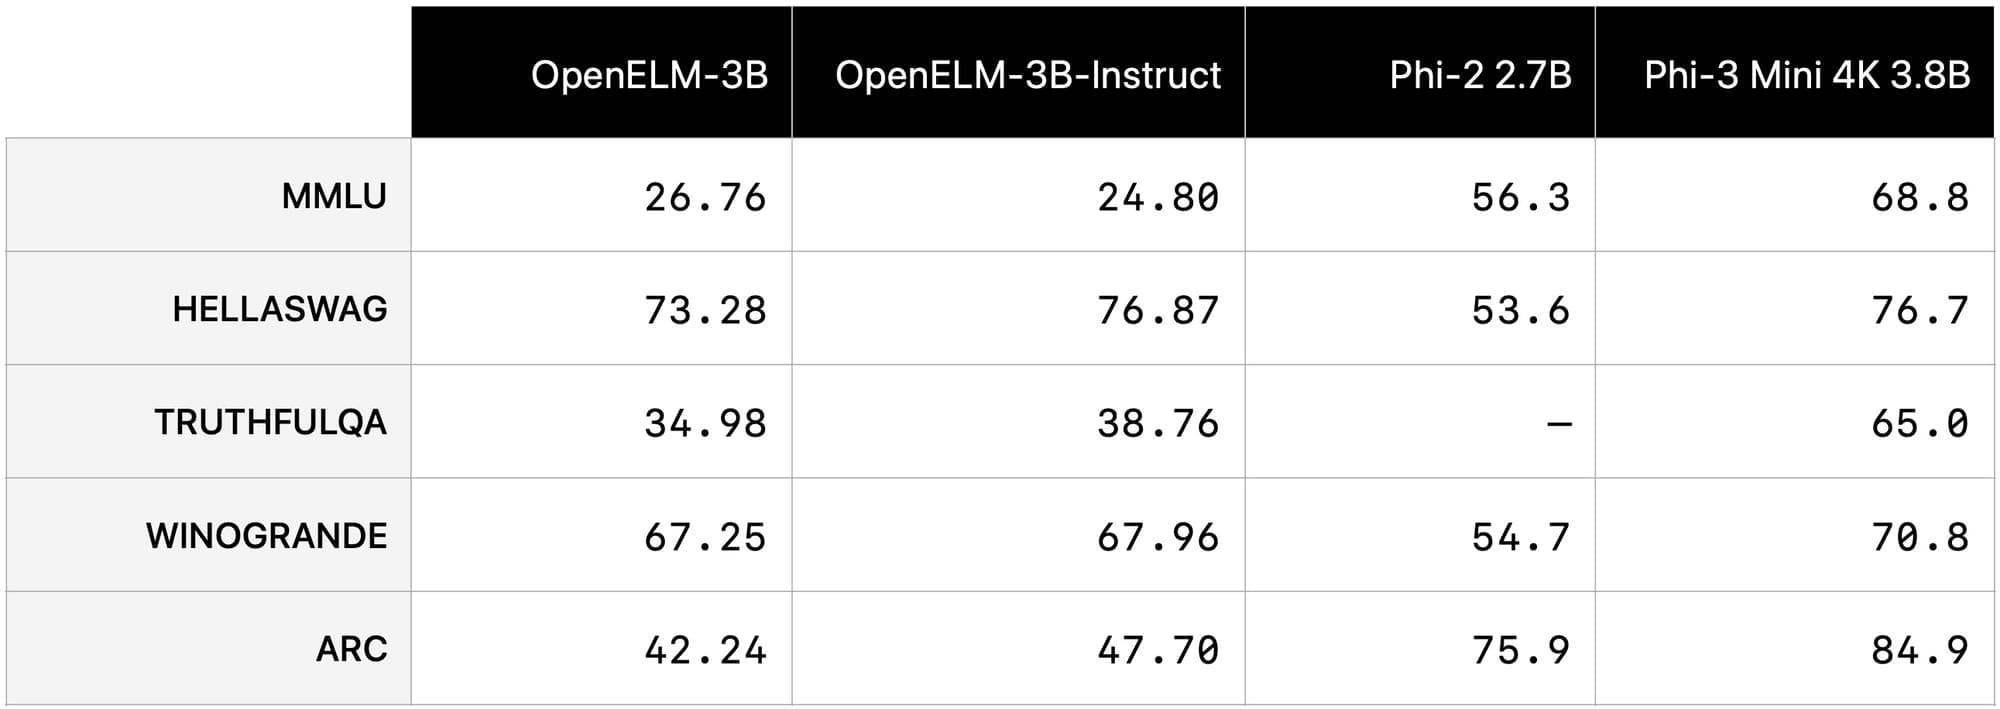 OpenELM benchmark chart.